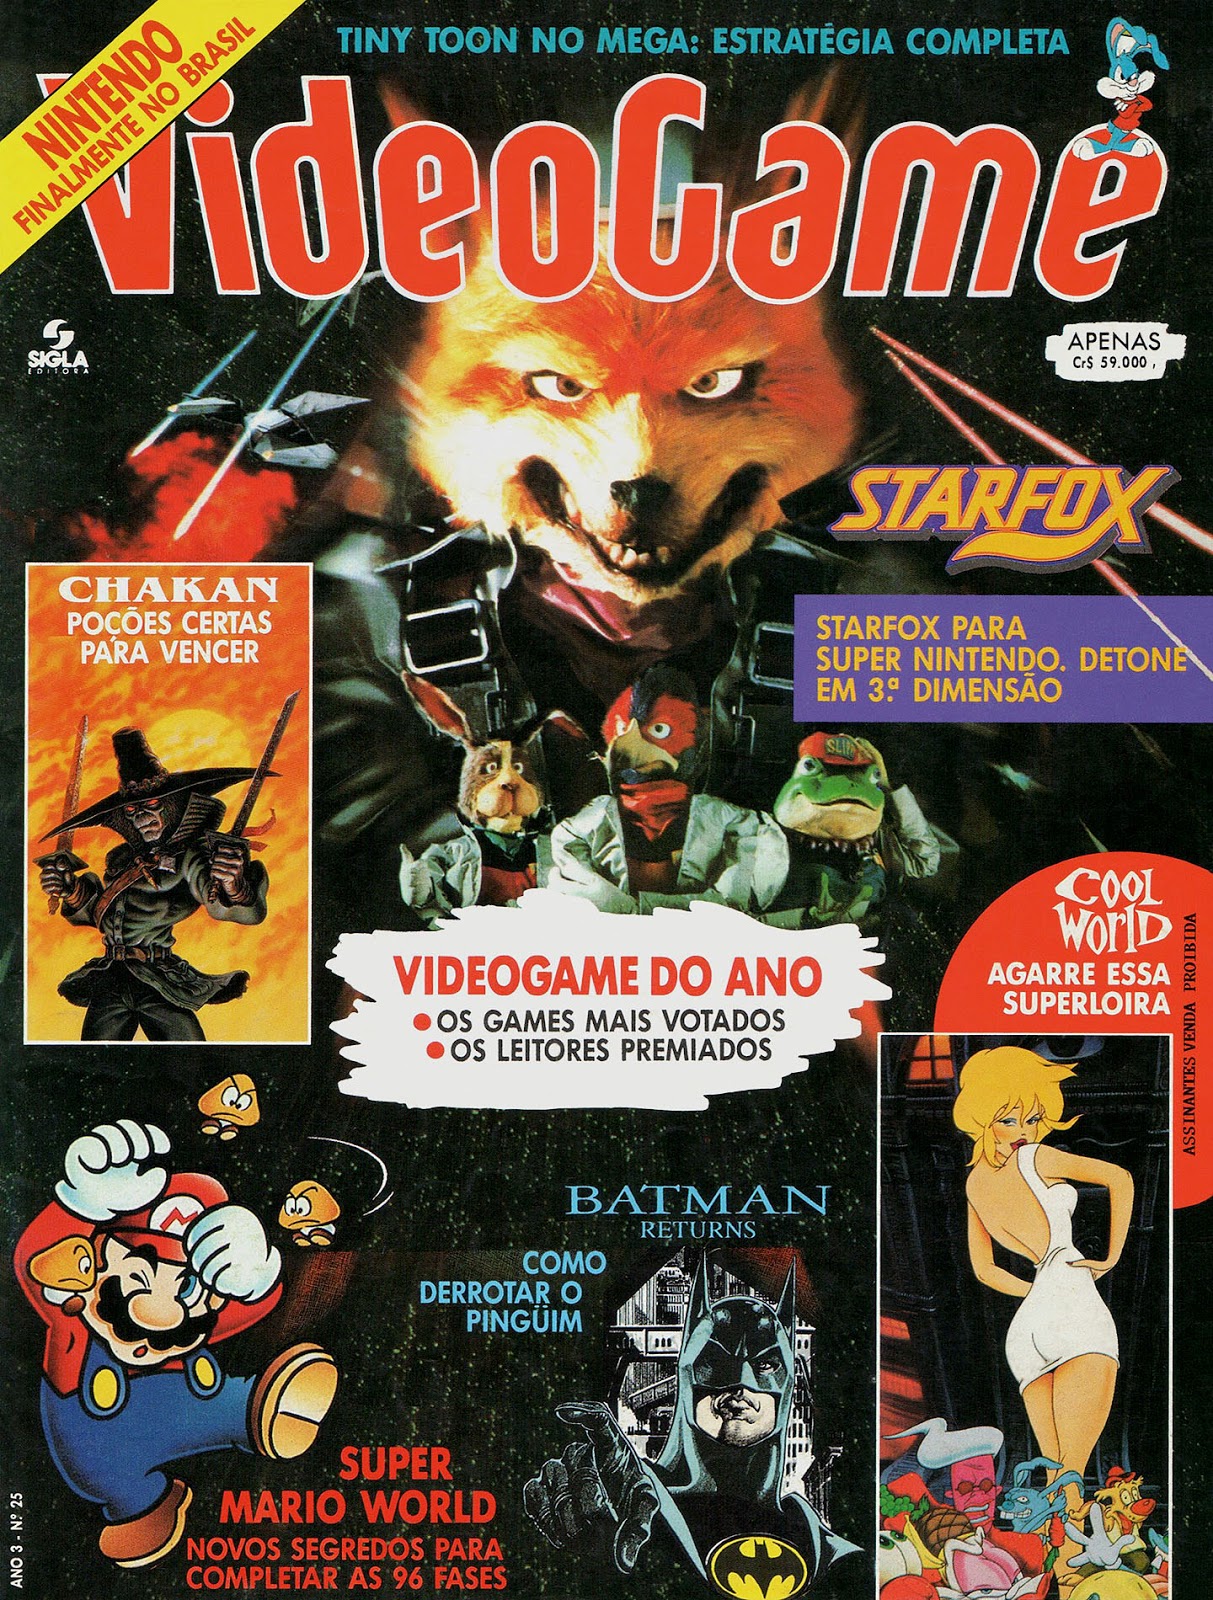 Retroavengers – Revistas antigas de videogames